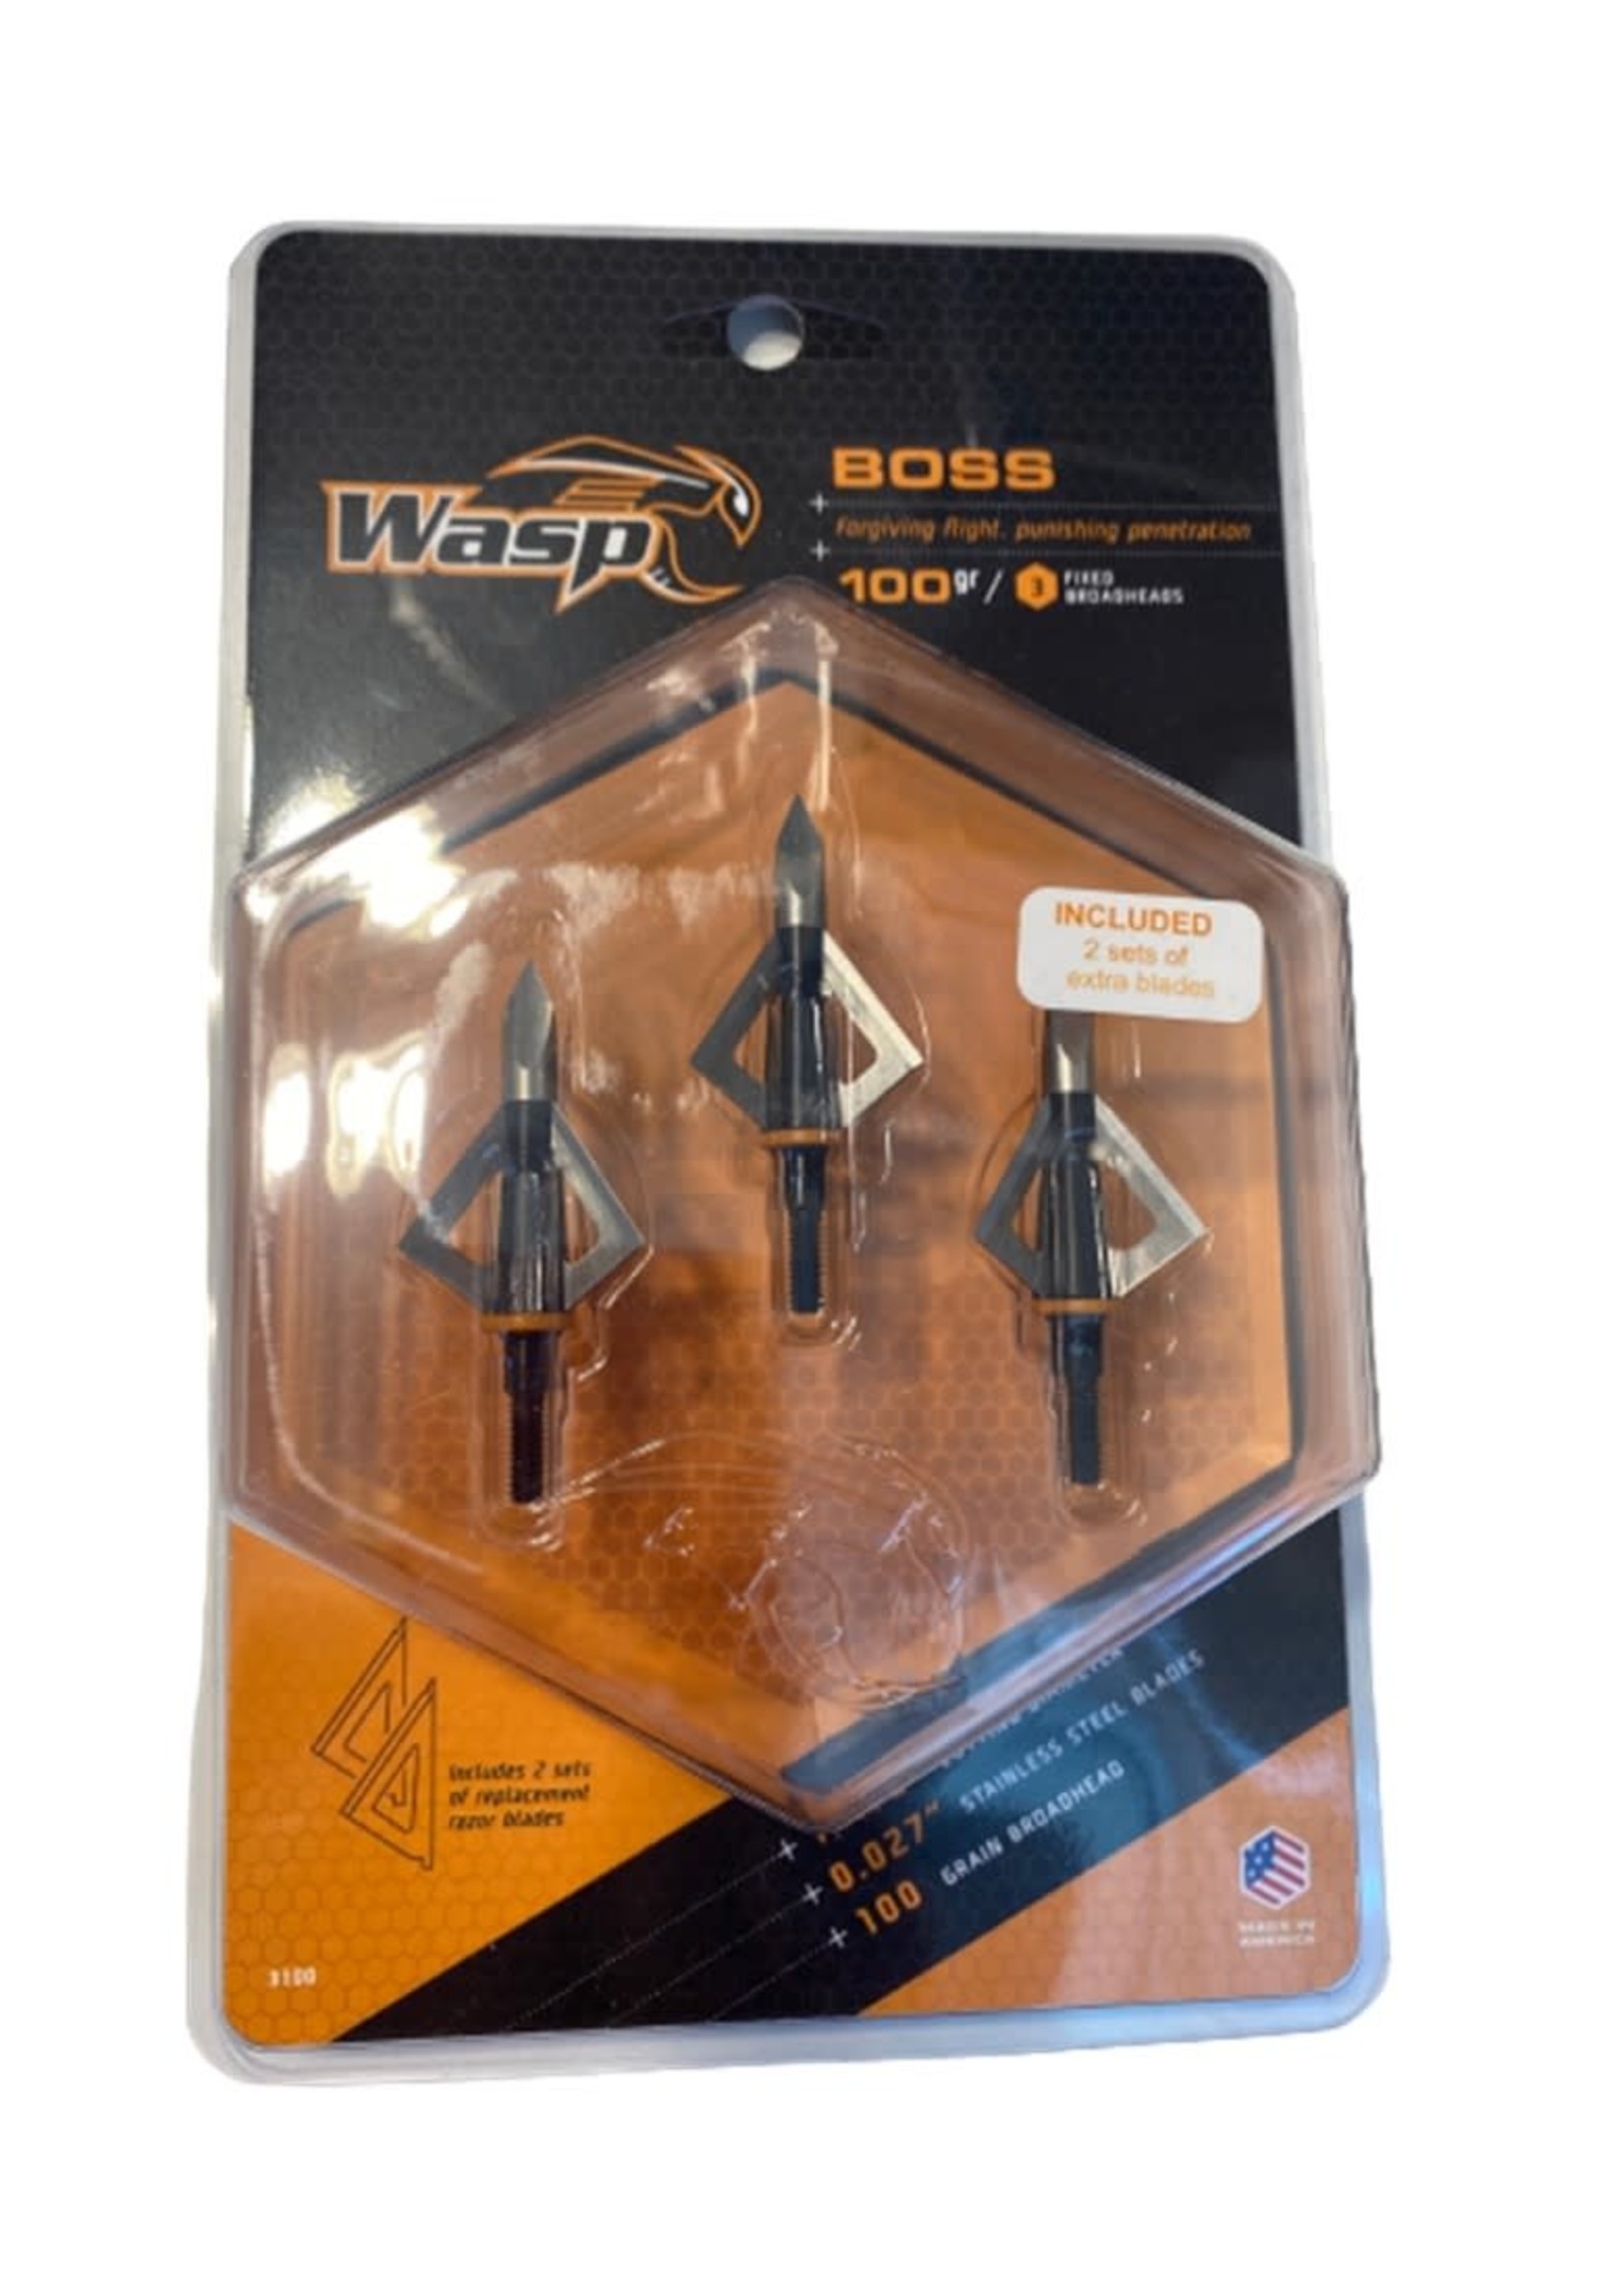 Wasp Boss  3 pointes de chasse larges fixes 100 gn., diamètre de coupe 1 1/8", lames en acier inoxydable .027" - Paquet de 3